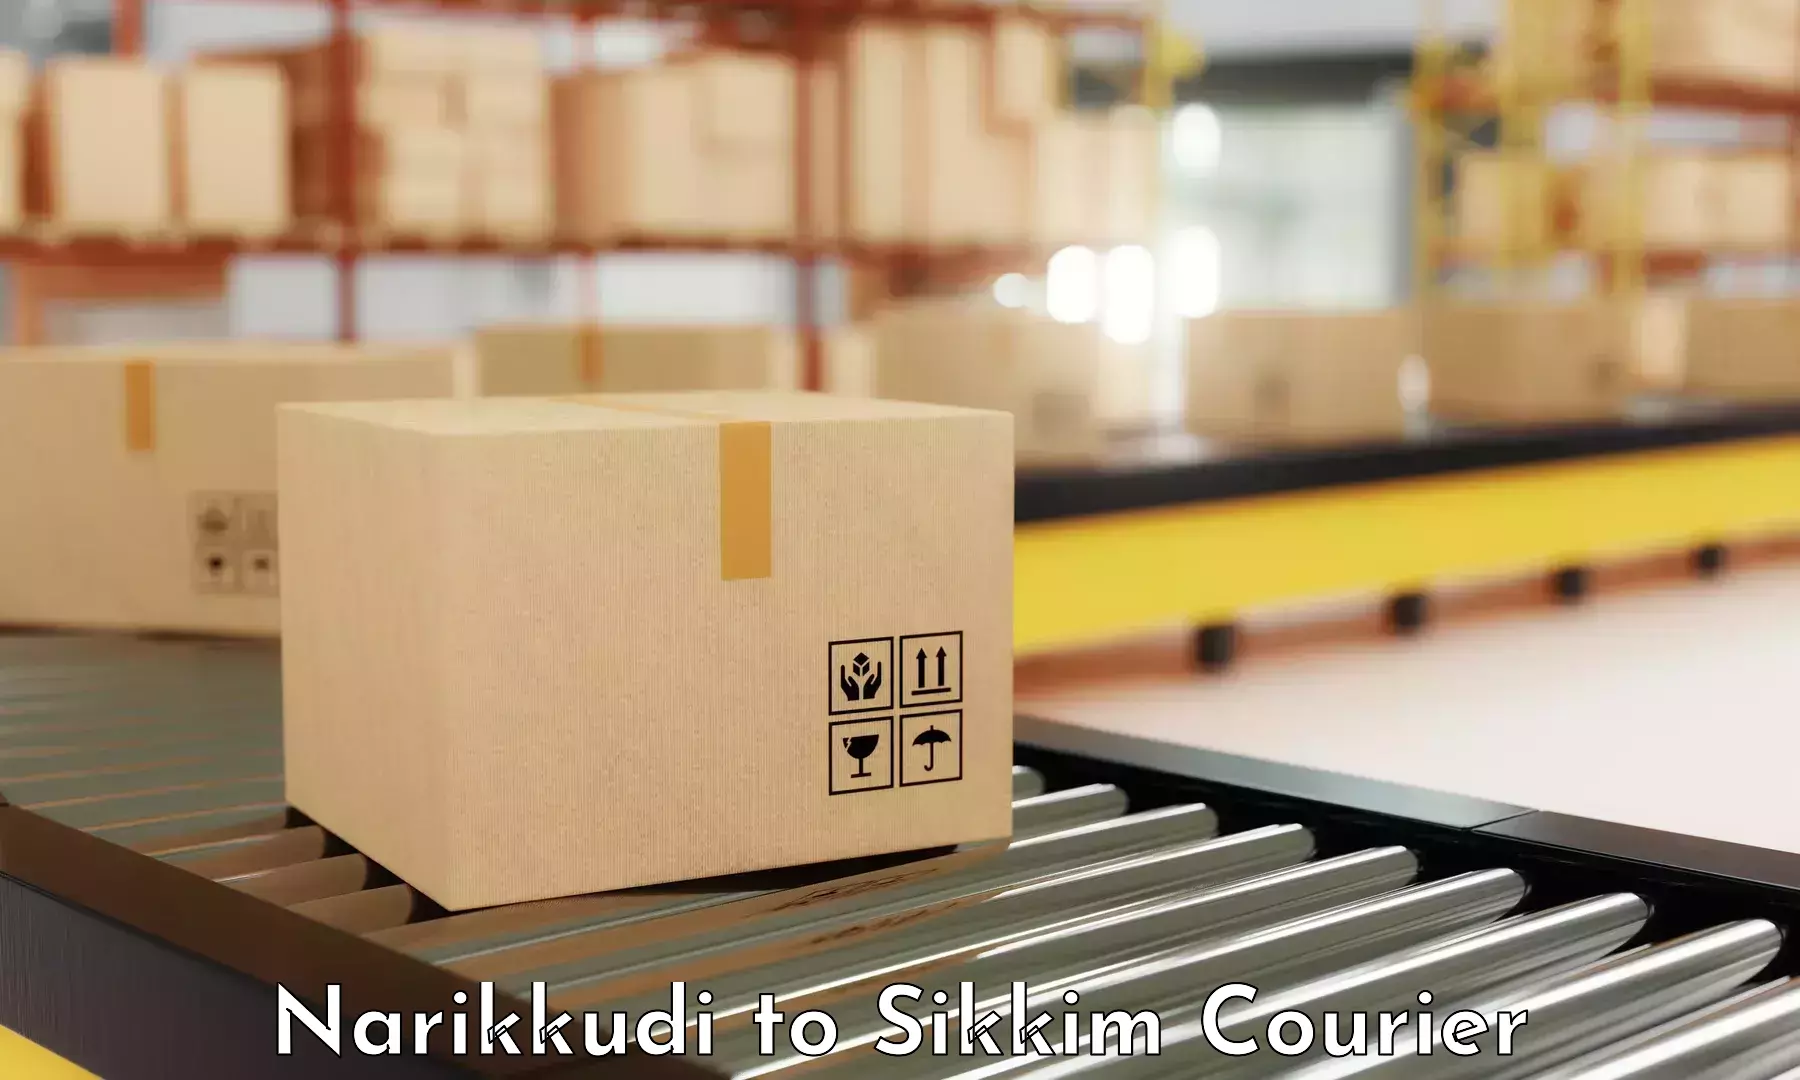 Sustainable shipping practices Narikkudi to Namchi